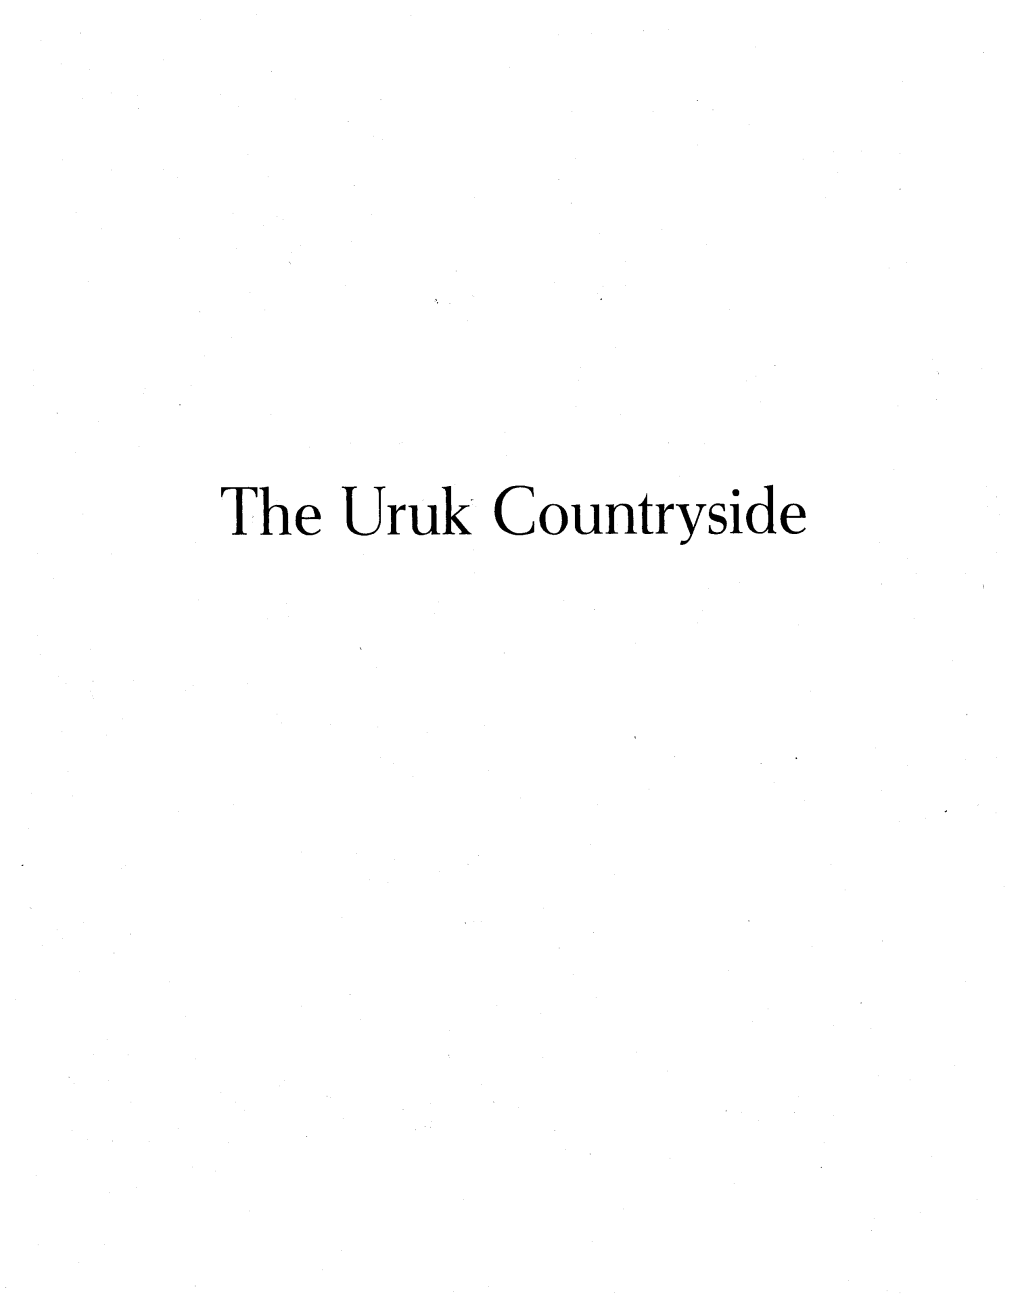 The Uruk Countryside